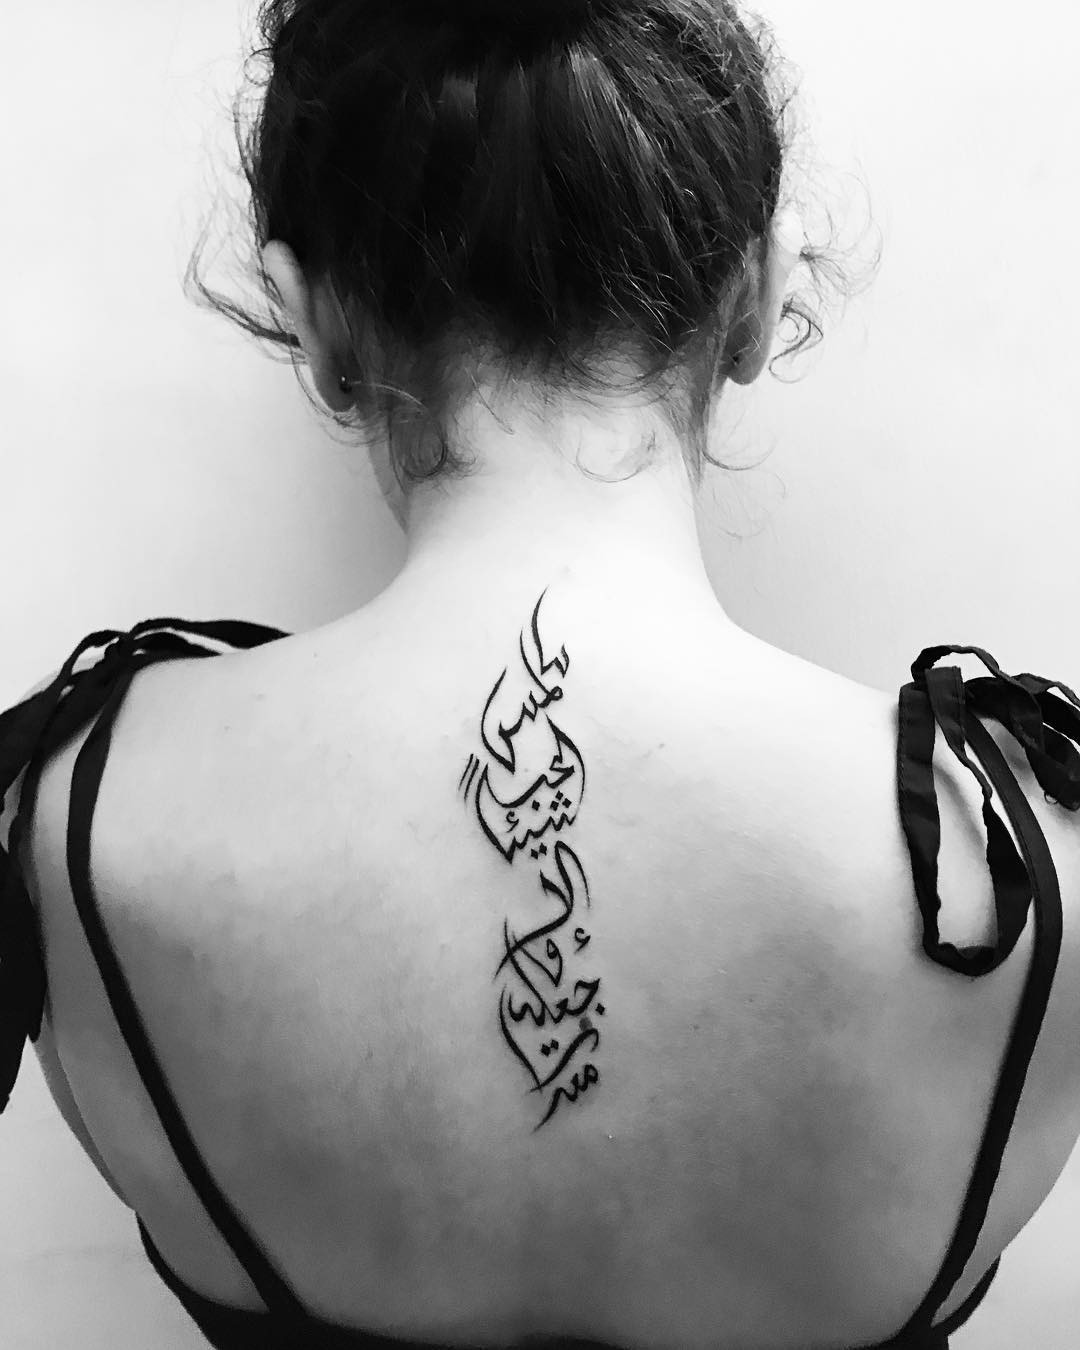 Tatuaje árabe en la espalda.